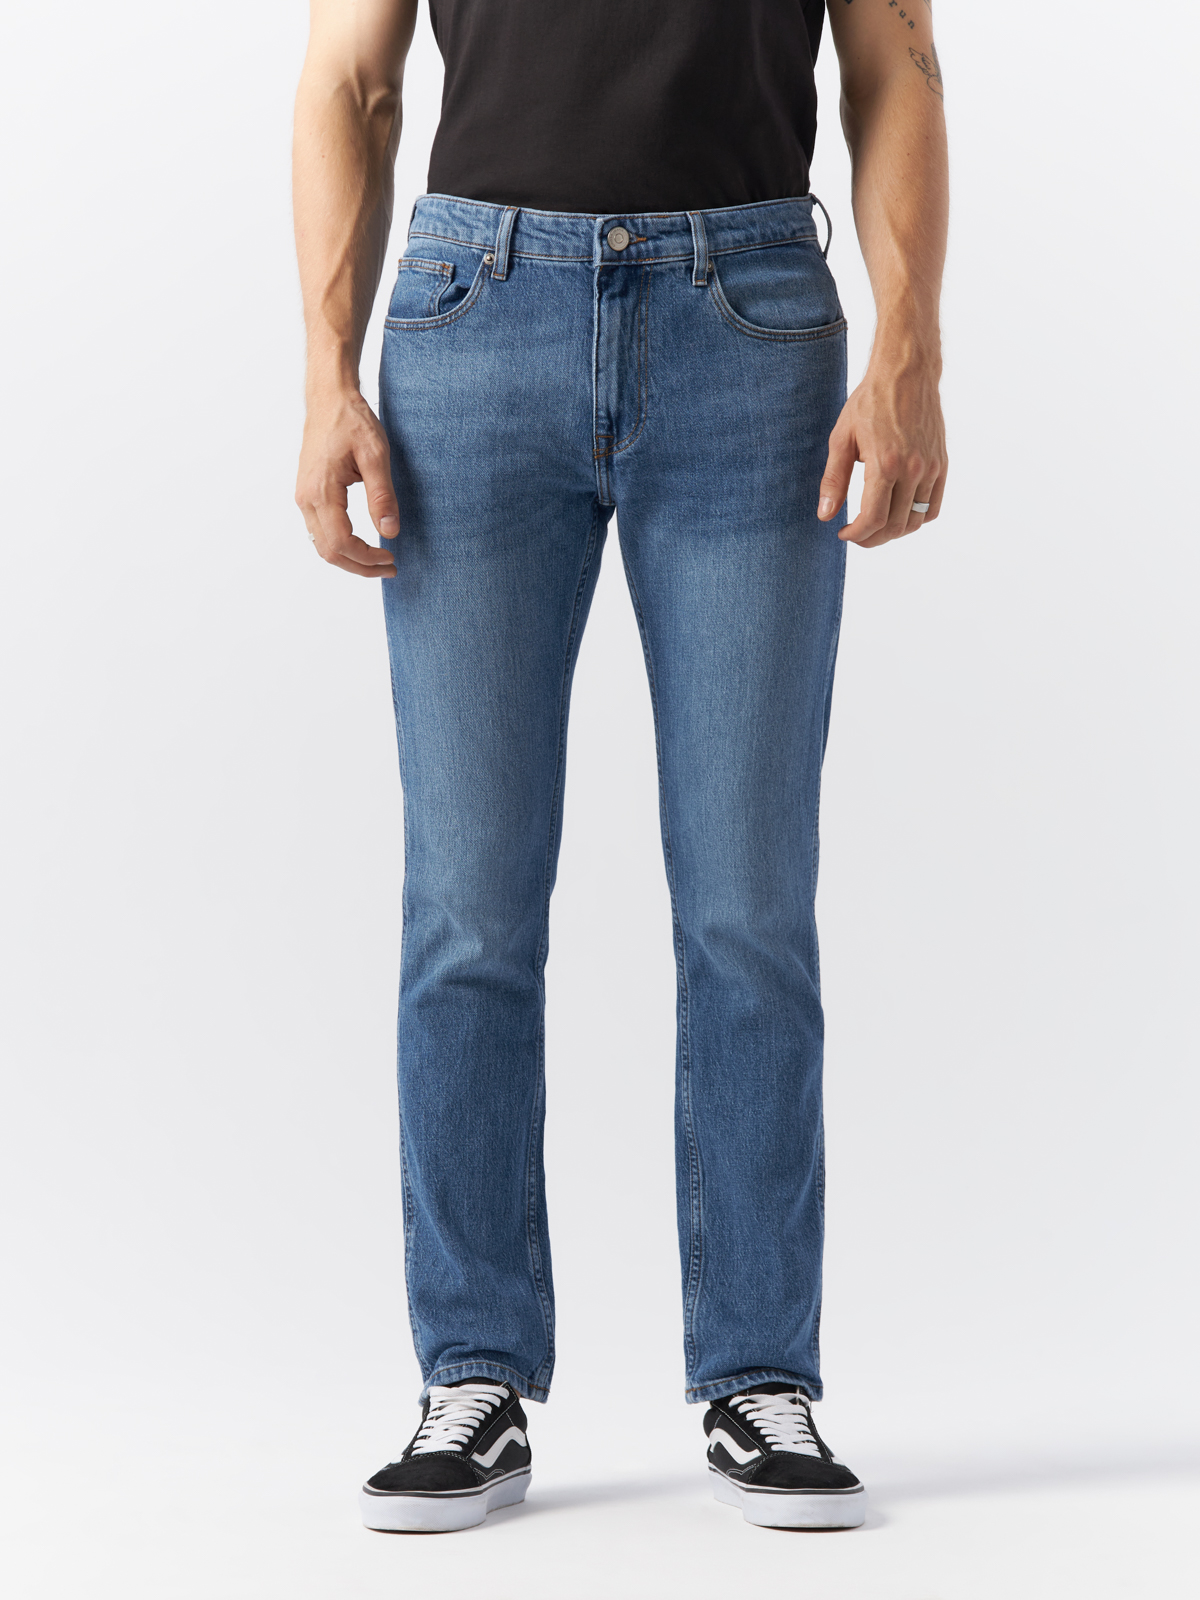 Джинсы Cross Jeans для мужчин, C 132-070, размер 32-32, синие